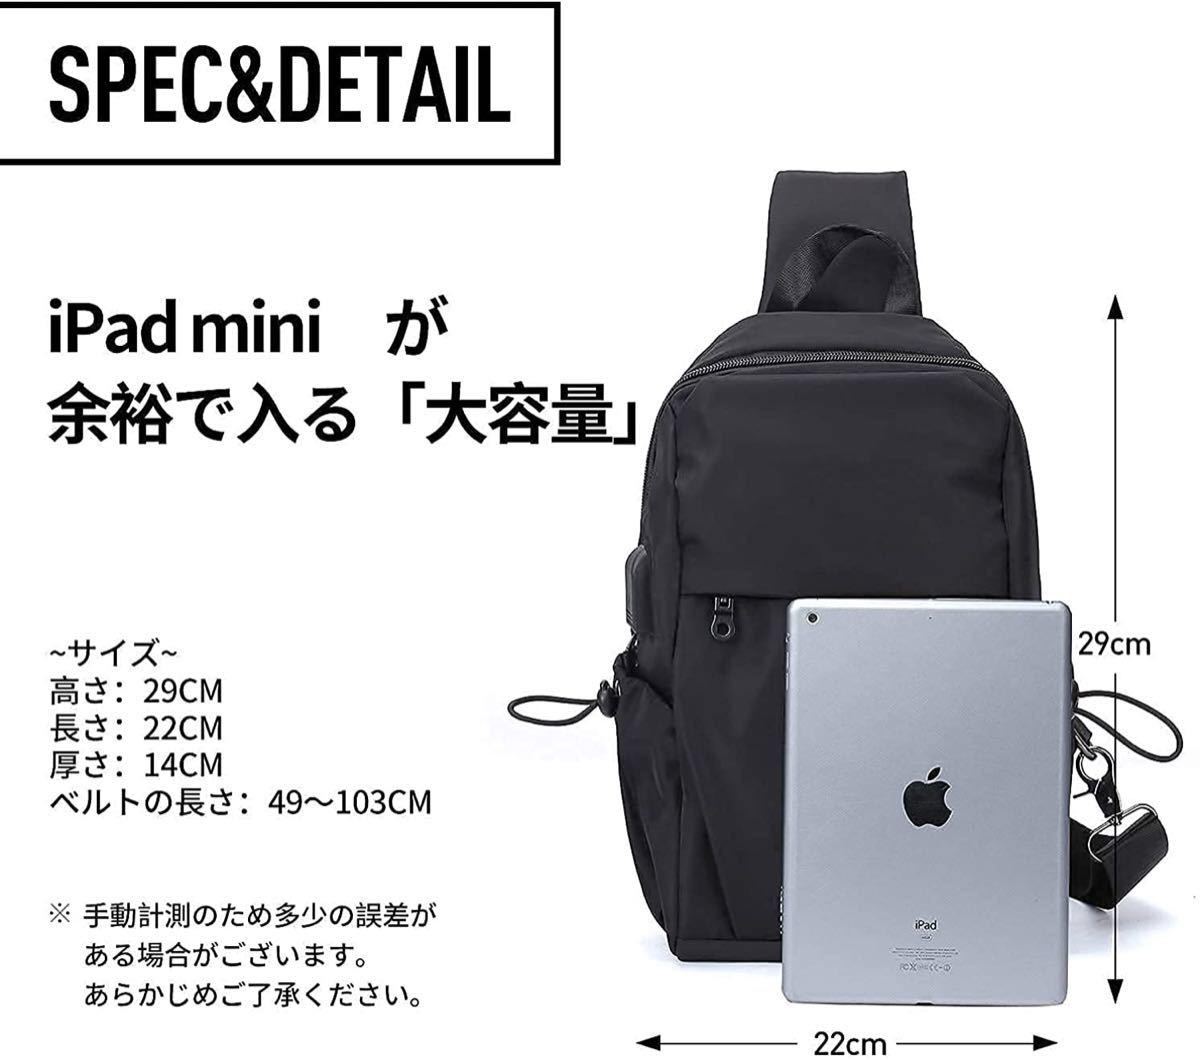 斜め掛け ボディバッグ ショルダーバッグ 斜めがけバッグ スポーツバッグ メンズ 防水 iPad収納可能 USBポート 自転車旅行